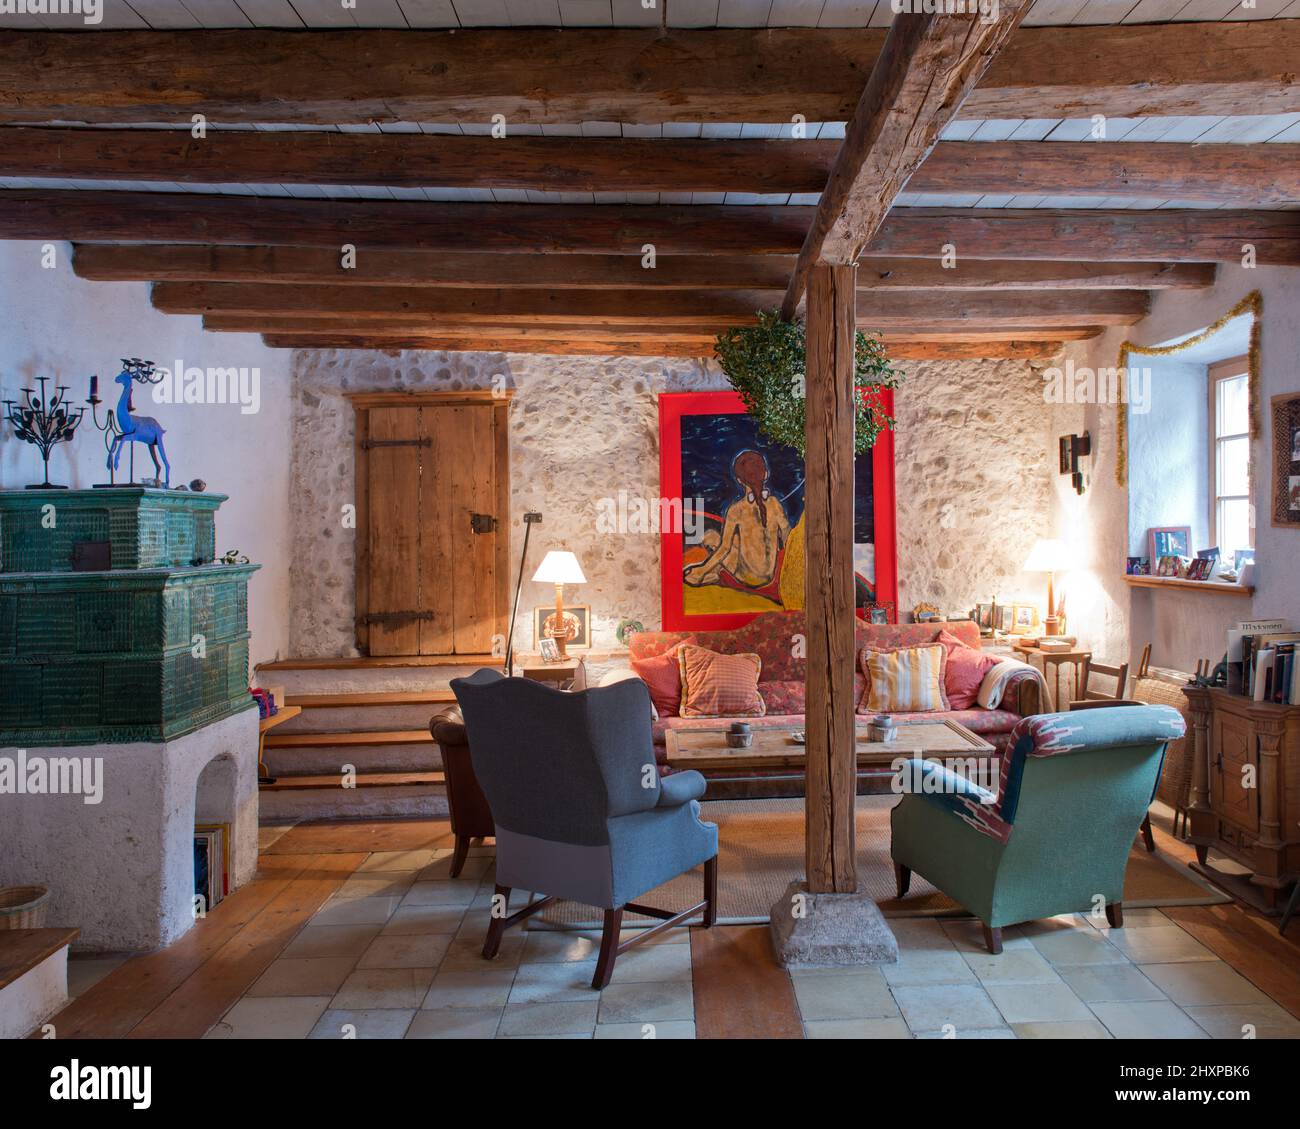 Wohnzimmer des Landhauses mit Holzbalken, grünem Kachelofen, Sesseln, Sofa und Gemälden Stockfoto